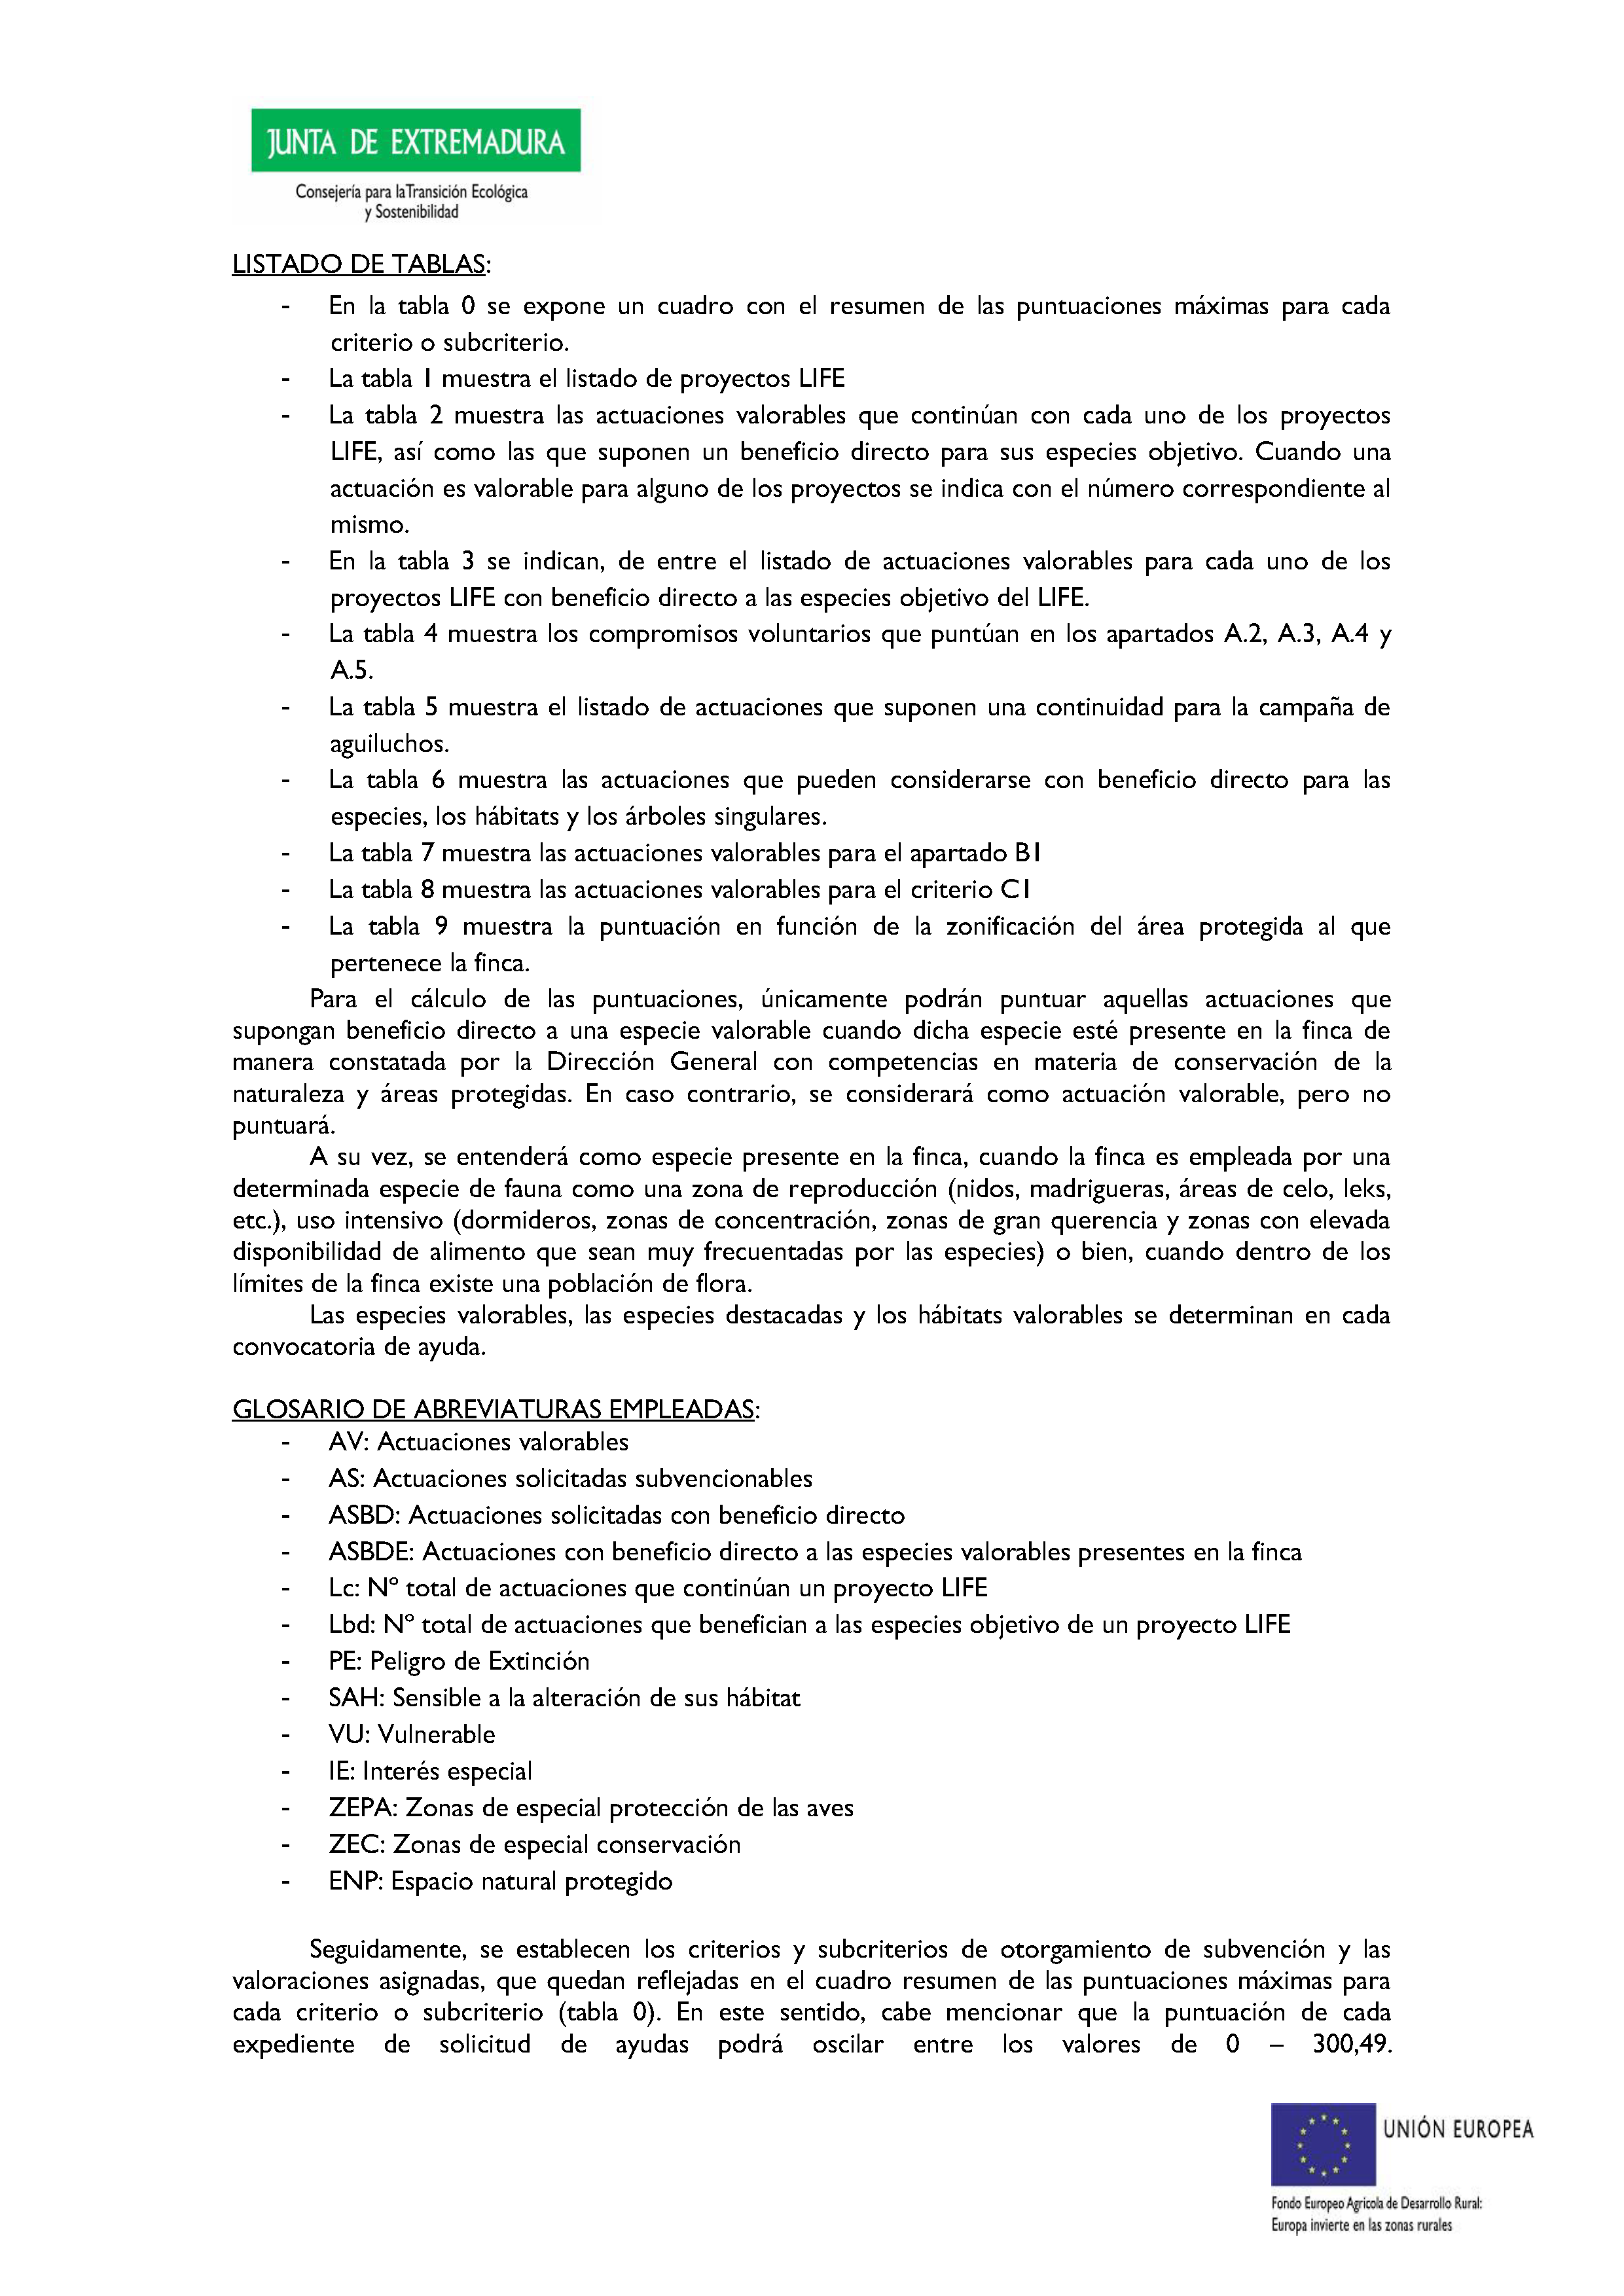 ANEXO VII CRITERIOS DE OTORGAMIENTO DE LA SUBVENCIÓN Pag 3